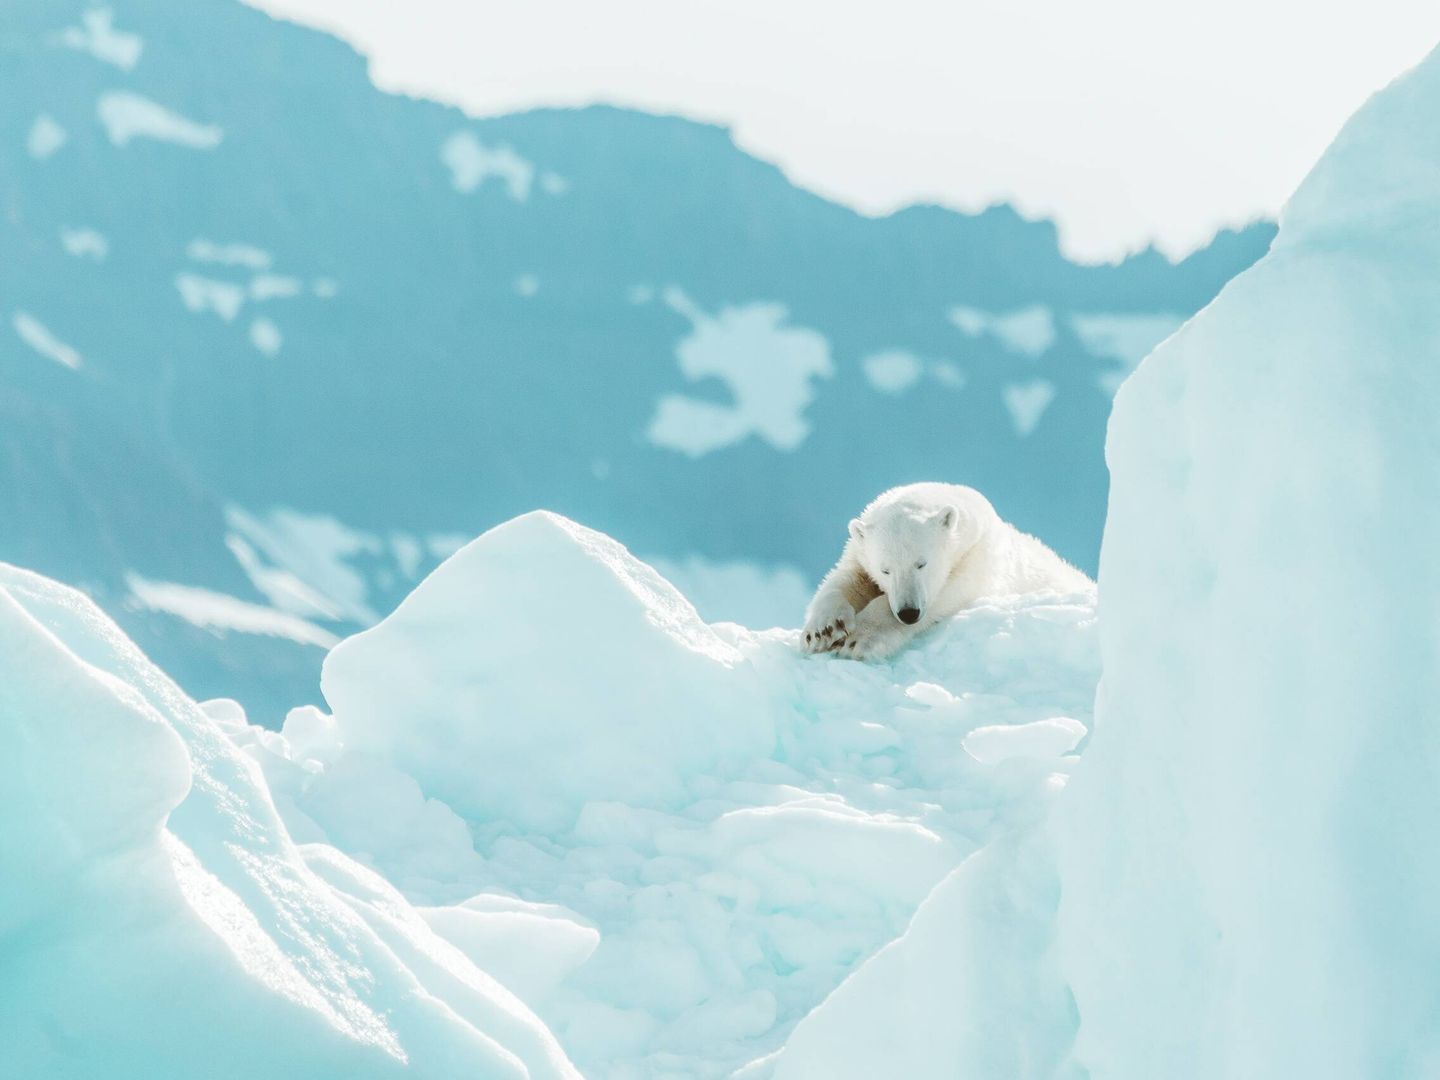 Un oso polar, una de las especies más amenazadas por el cambio climático. Foto: Unsplash